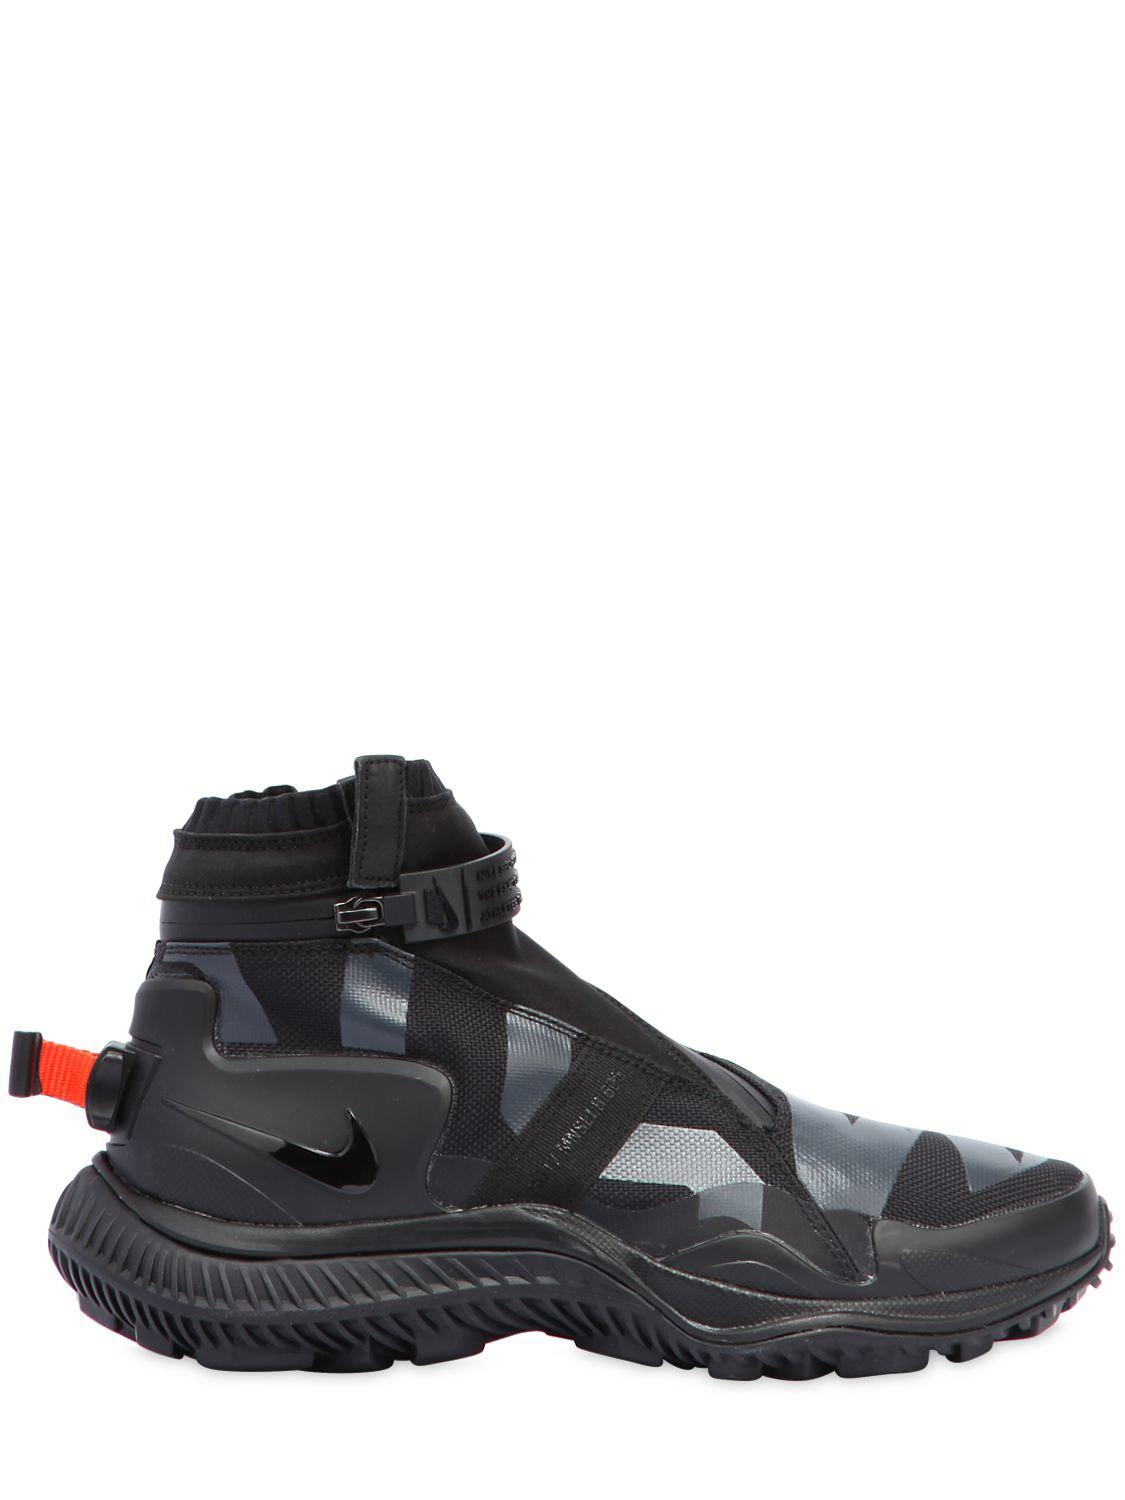 Nike Acg.008.zpbt Waterproof Sneaker Boots in Black for Men - Lyst